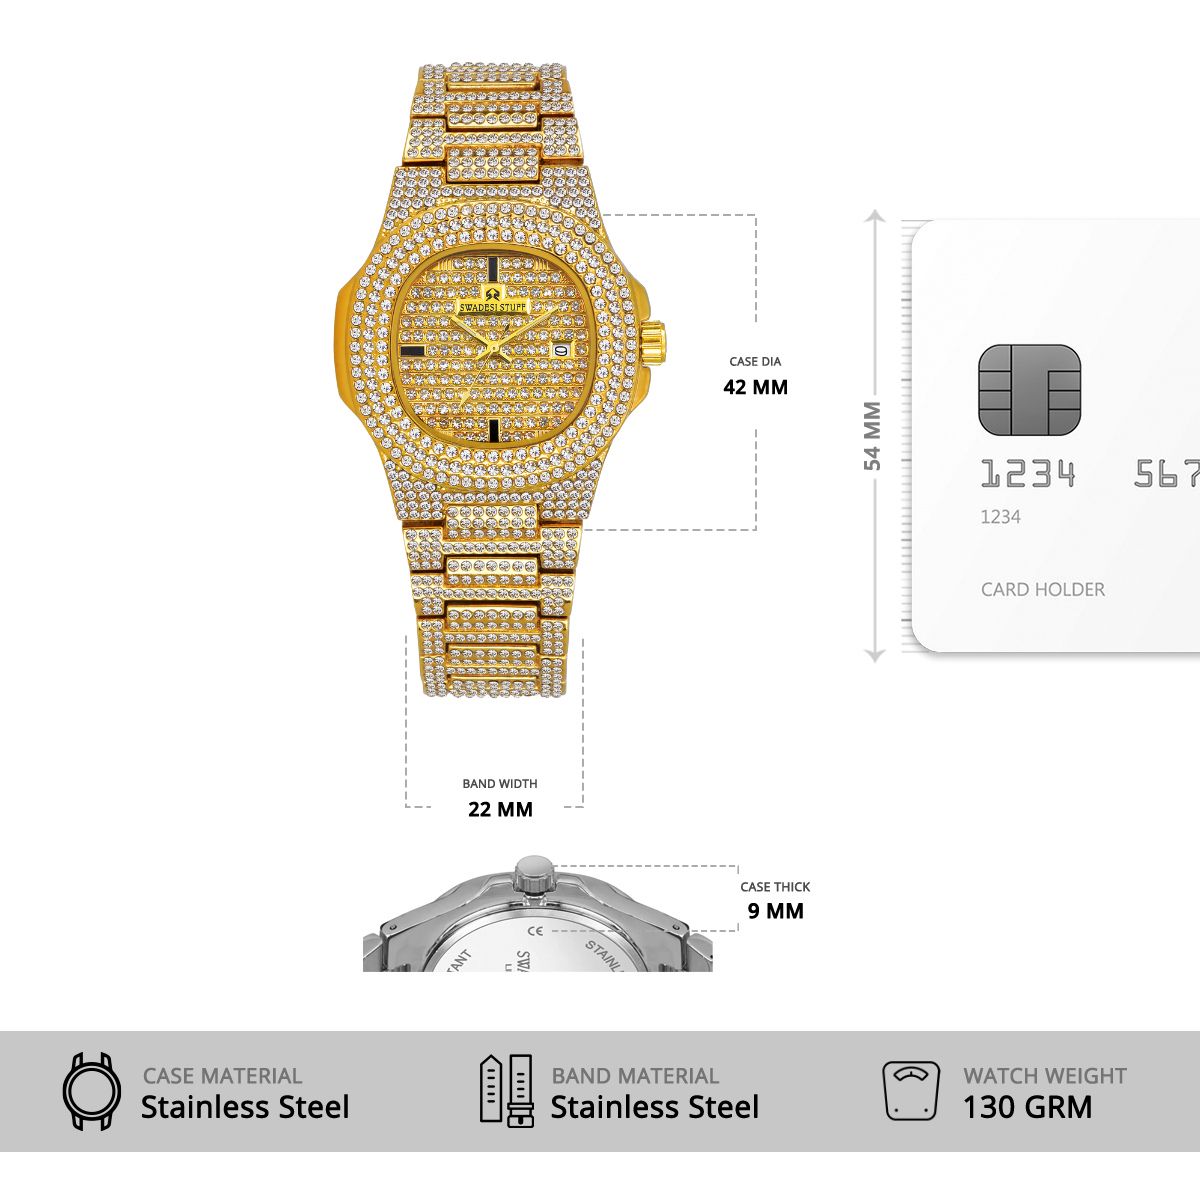 The Emperor - Premium & Luxurious Metal Watch For Men